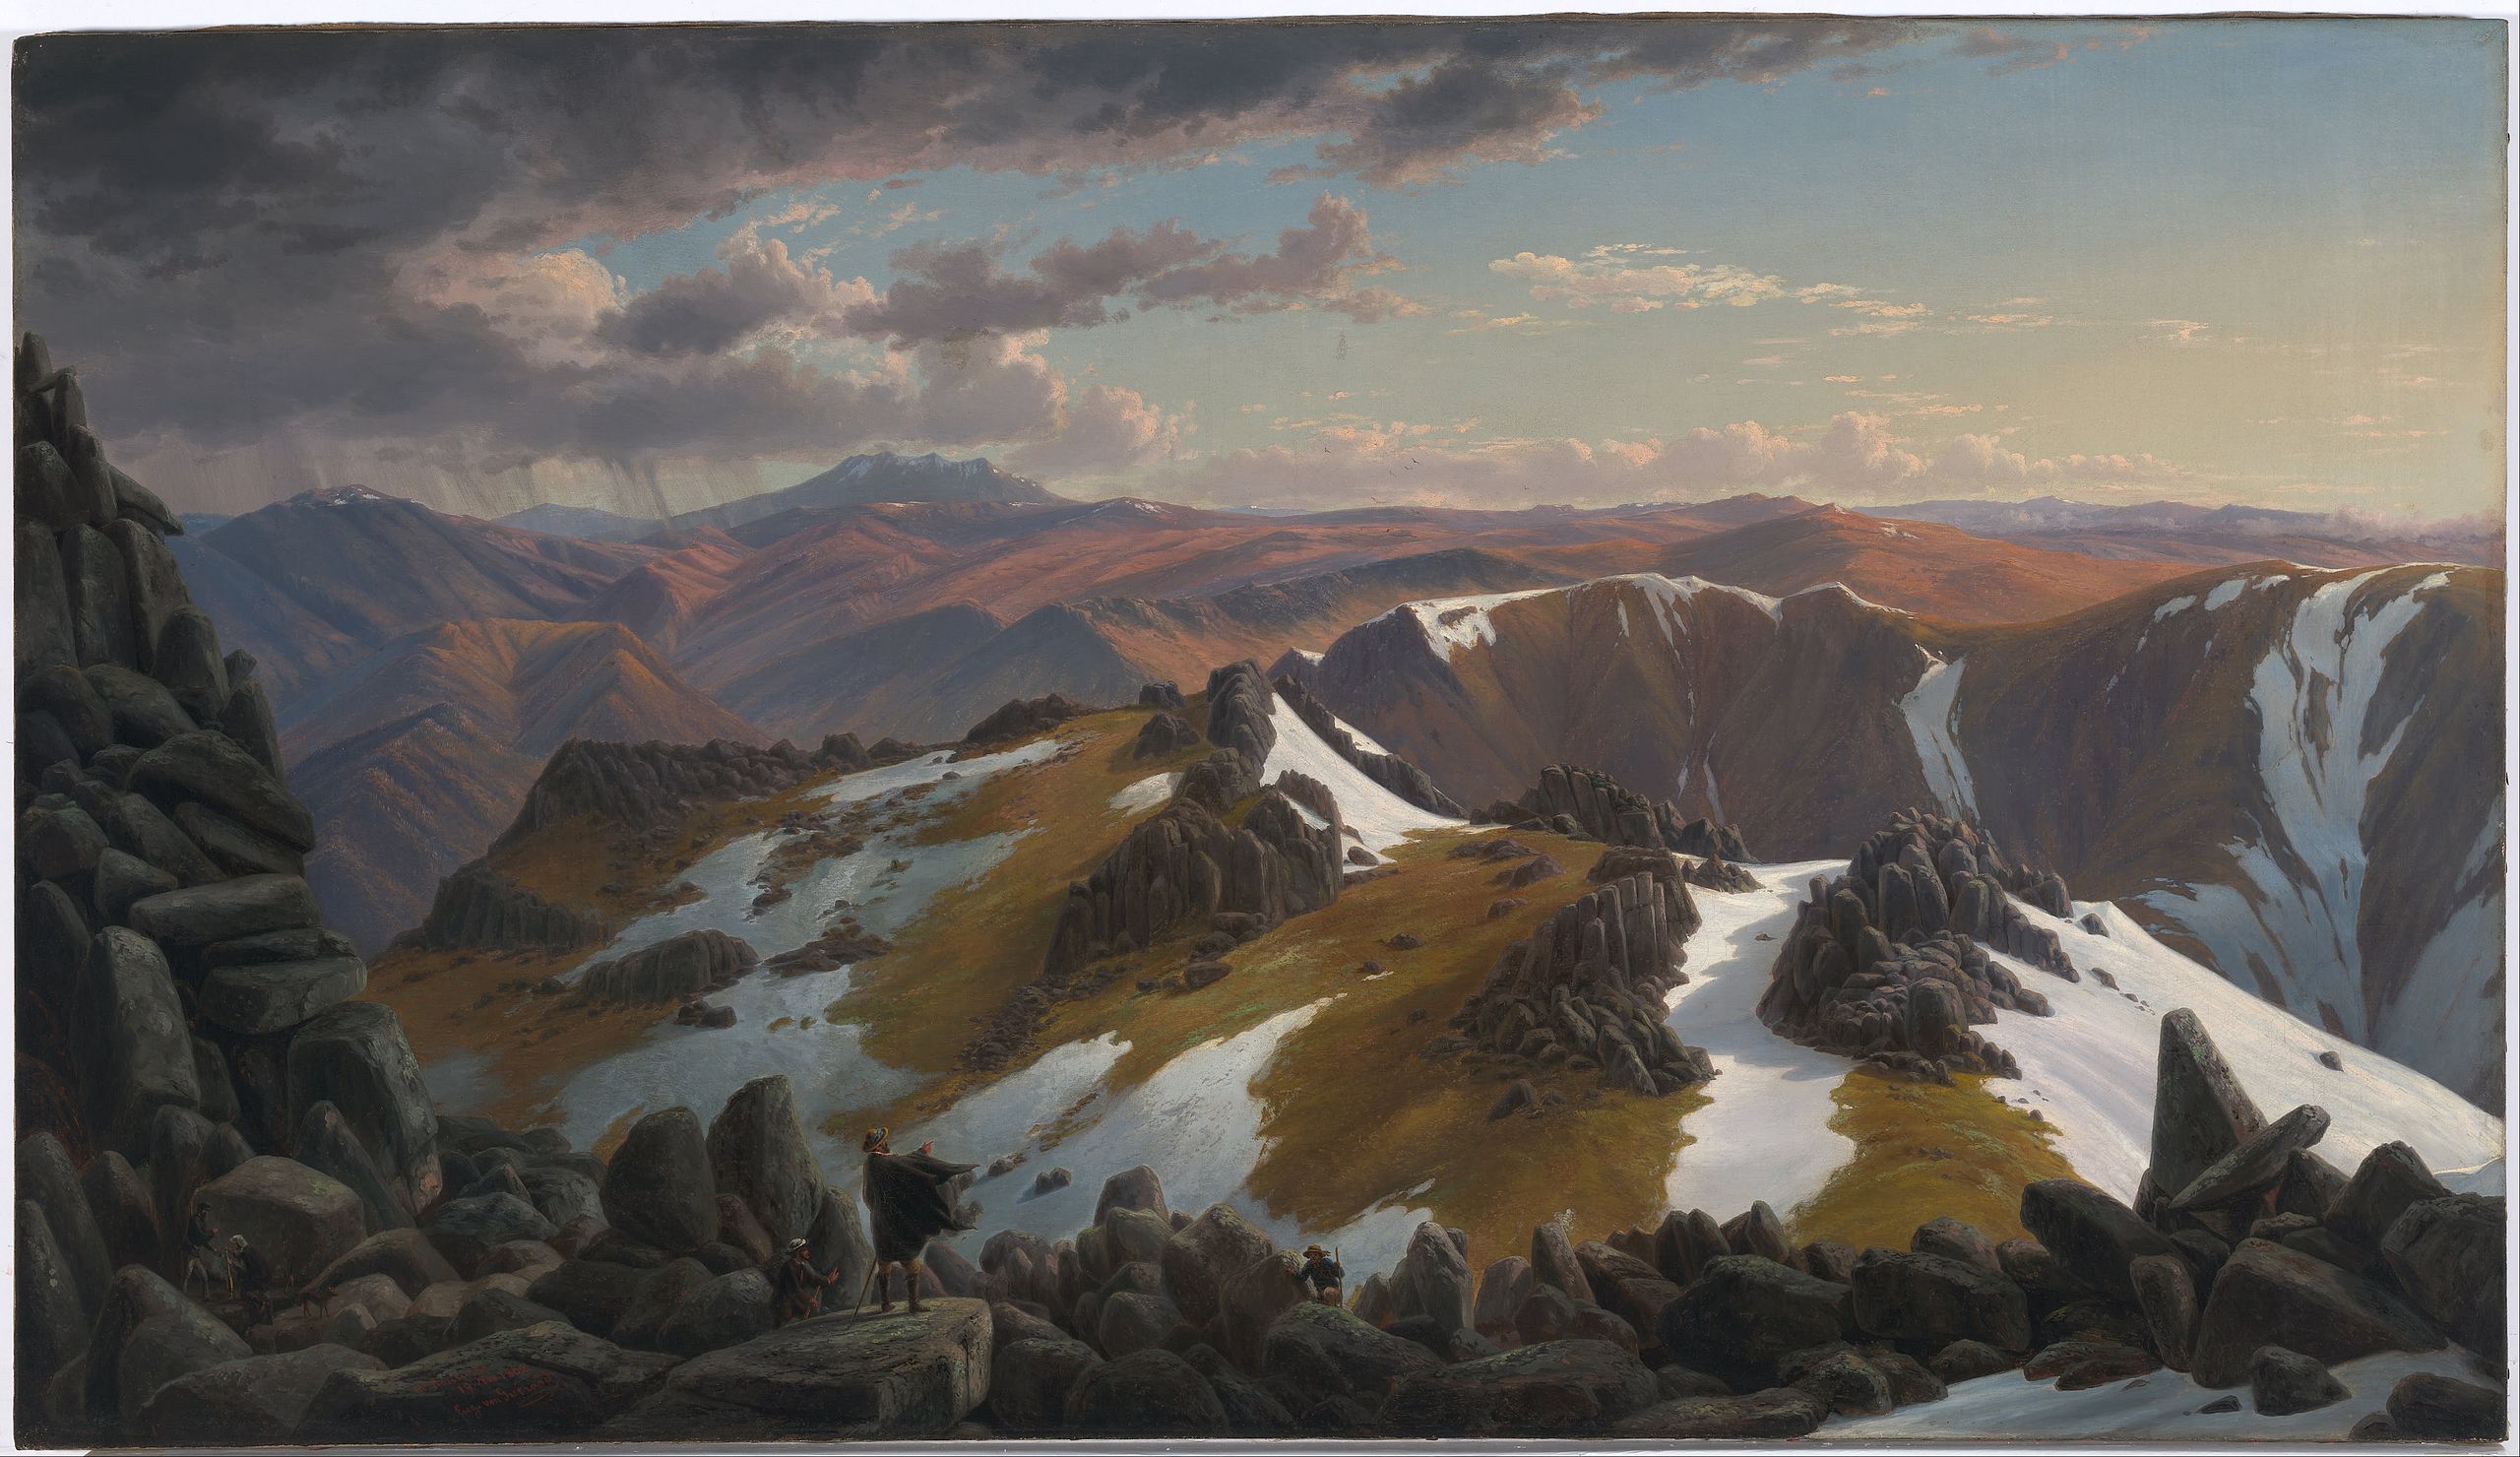 科修斯科山北顶的东北视角 by 尤金 瓜拉德 - 1863 - 66.5 x 116.8 cm 